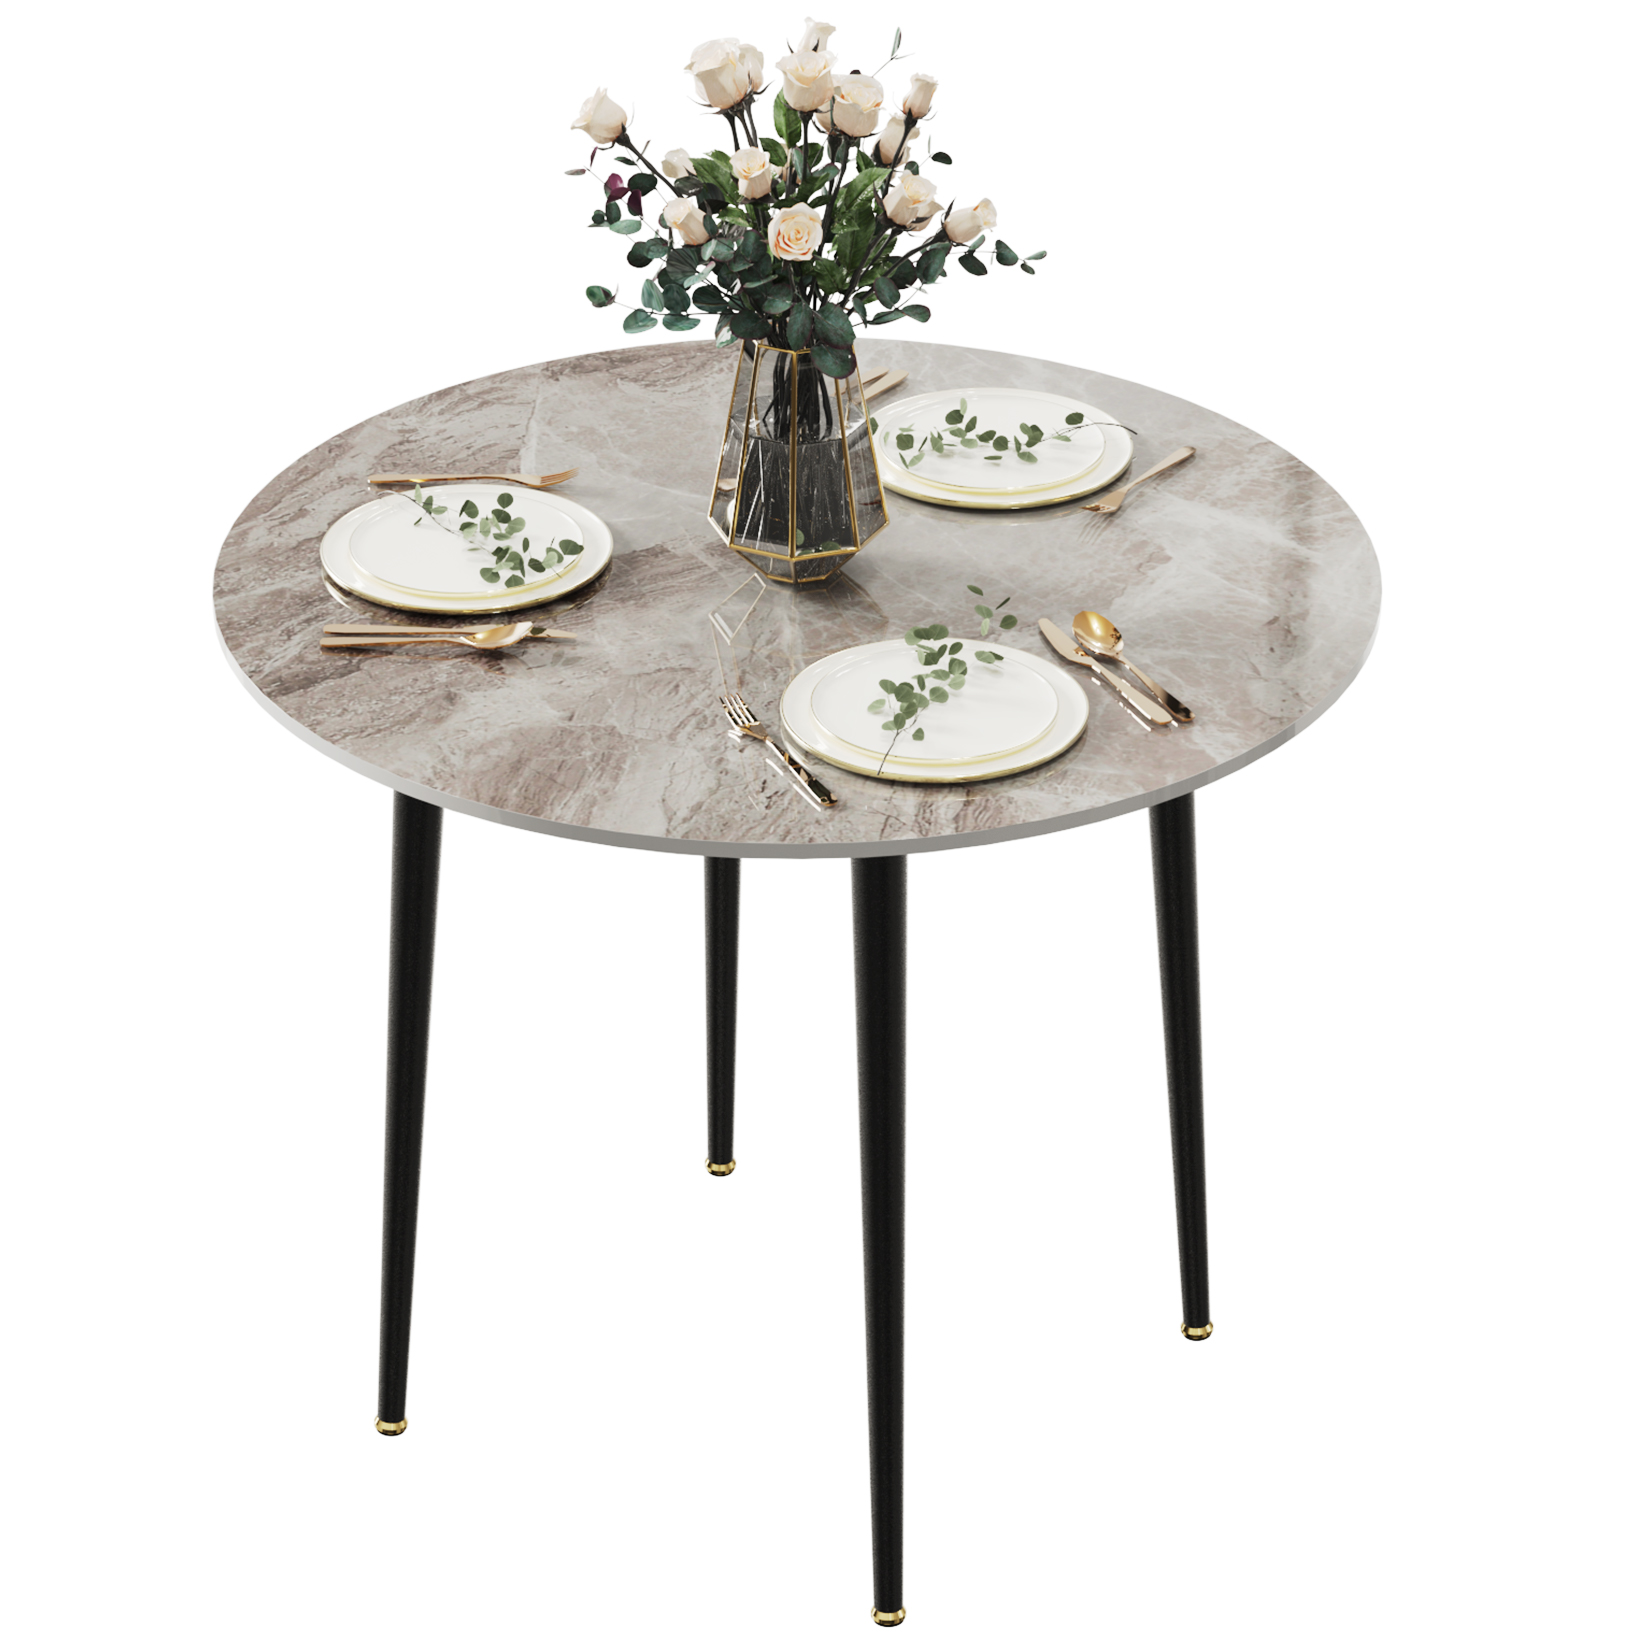 ダイニングテーブル 2人 丸テーブル 80cm幅 石材×スチール 食卓 円形 円卓 カフェテーブル 丸 おしゃれ 大理石風 高級 ホワイト グレー